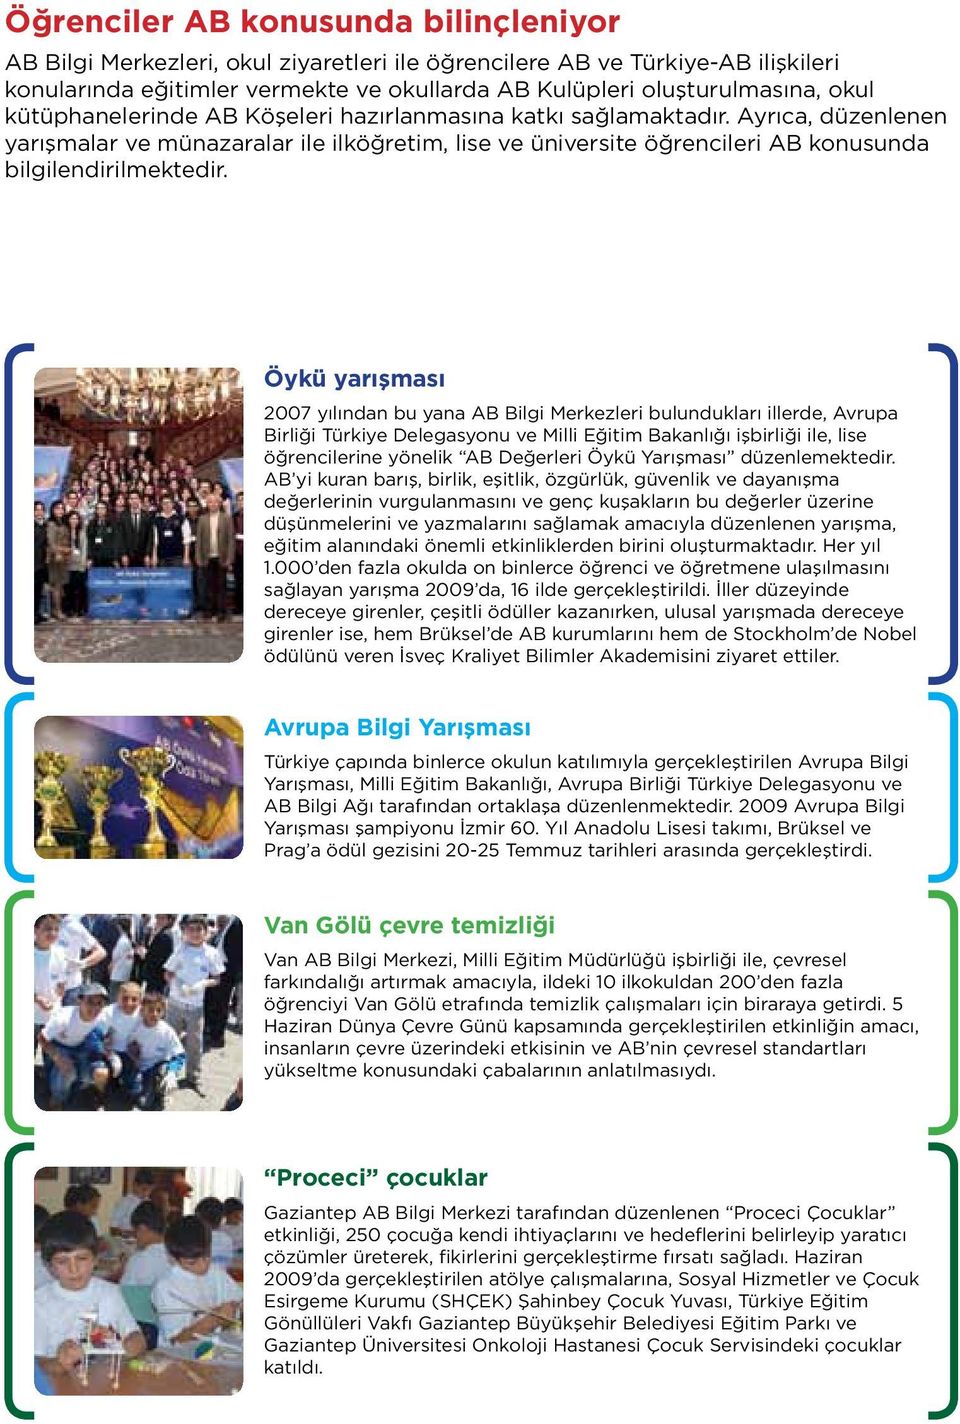 Öykü yarışması 2007 yılından bu yana AB Bilgi Merkezleri bulundukları illerde, Avrupa Birliği Türkiye Delegasyonu ve Milli Eğitim Bakanlığı işbirliği ile, lise öğrencilerine yönelik AB Değerleri Öykü